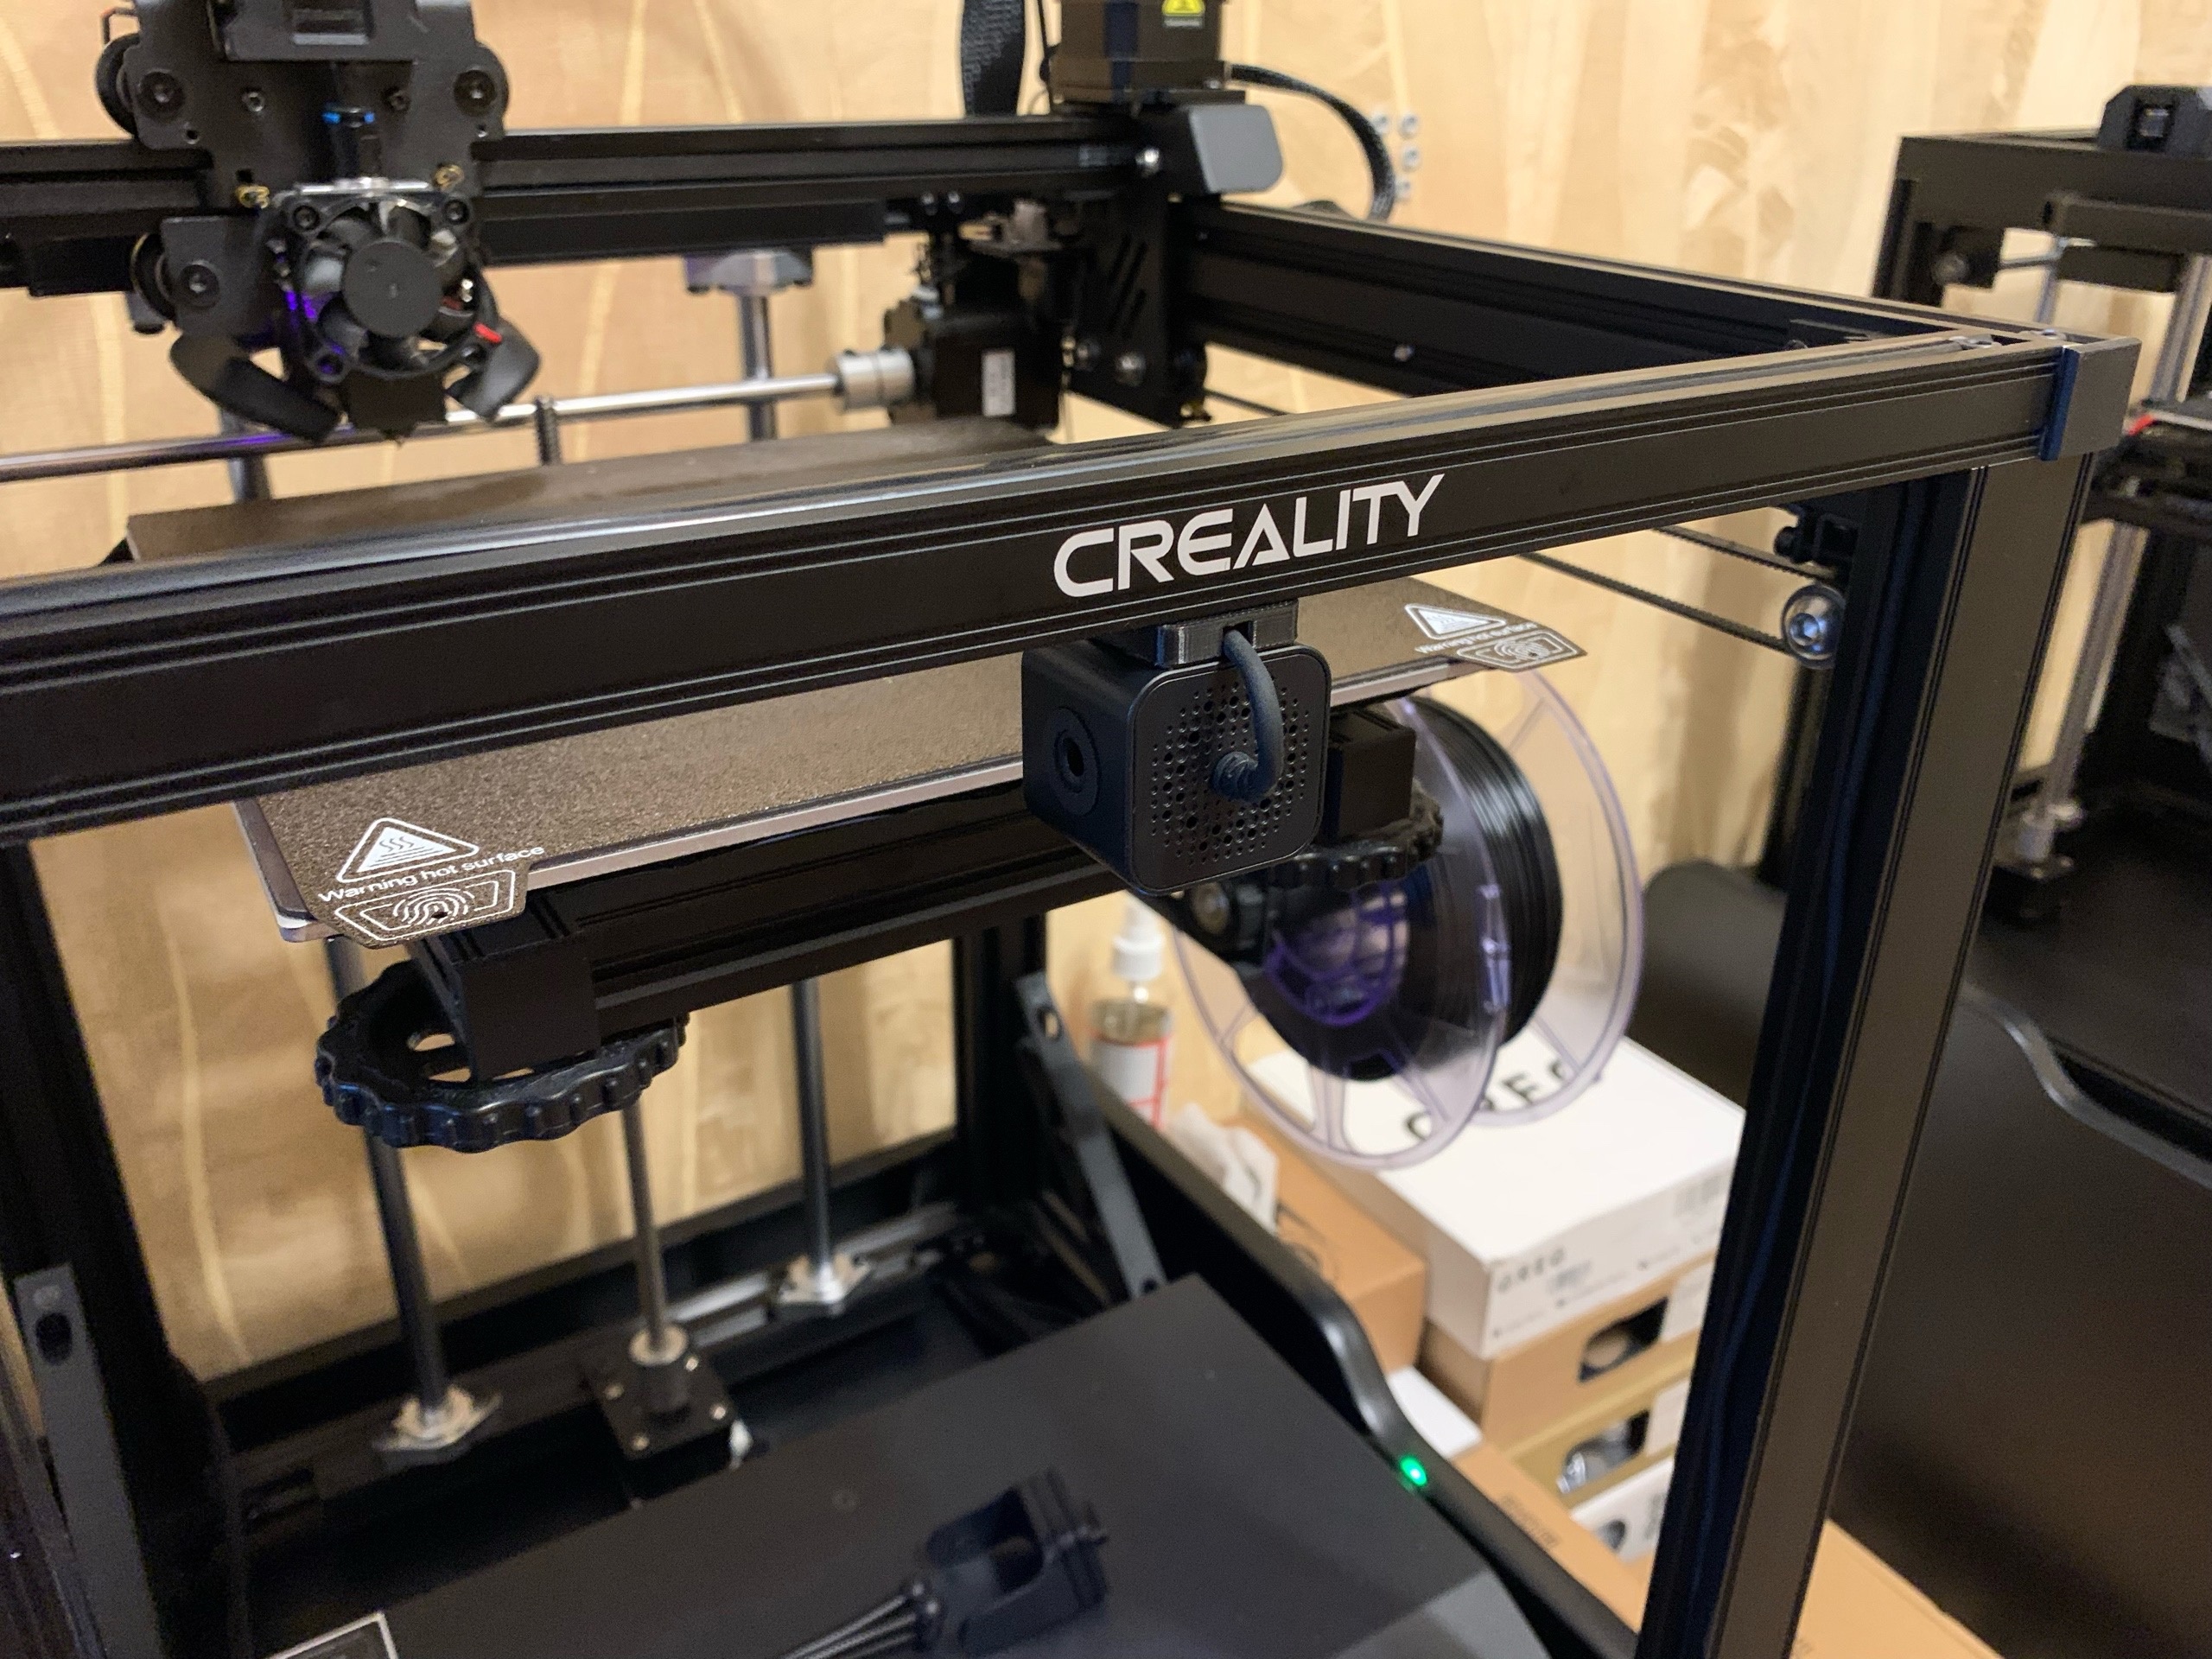 Creality Nebula Camera Stand for Ender-3 v2, 3D models download